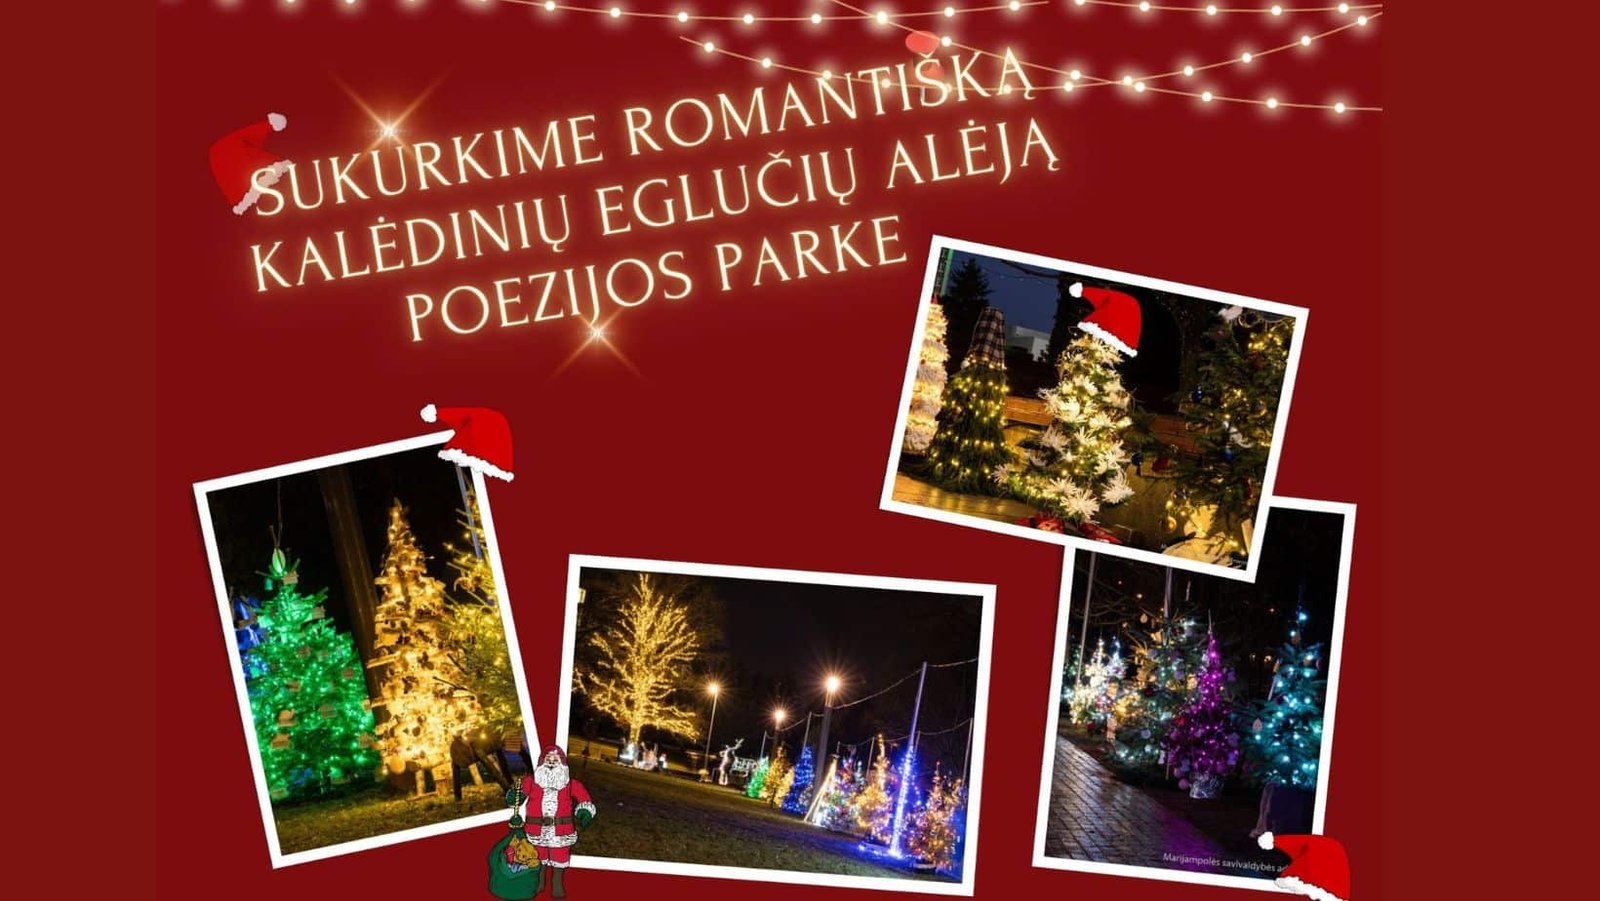 Read more about the article Sukurkime romantišką kalėdinių eglučių alėją Poezijos parke!